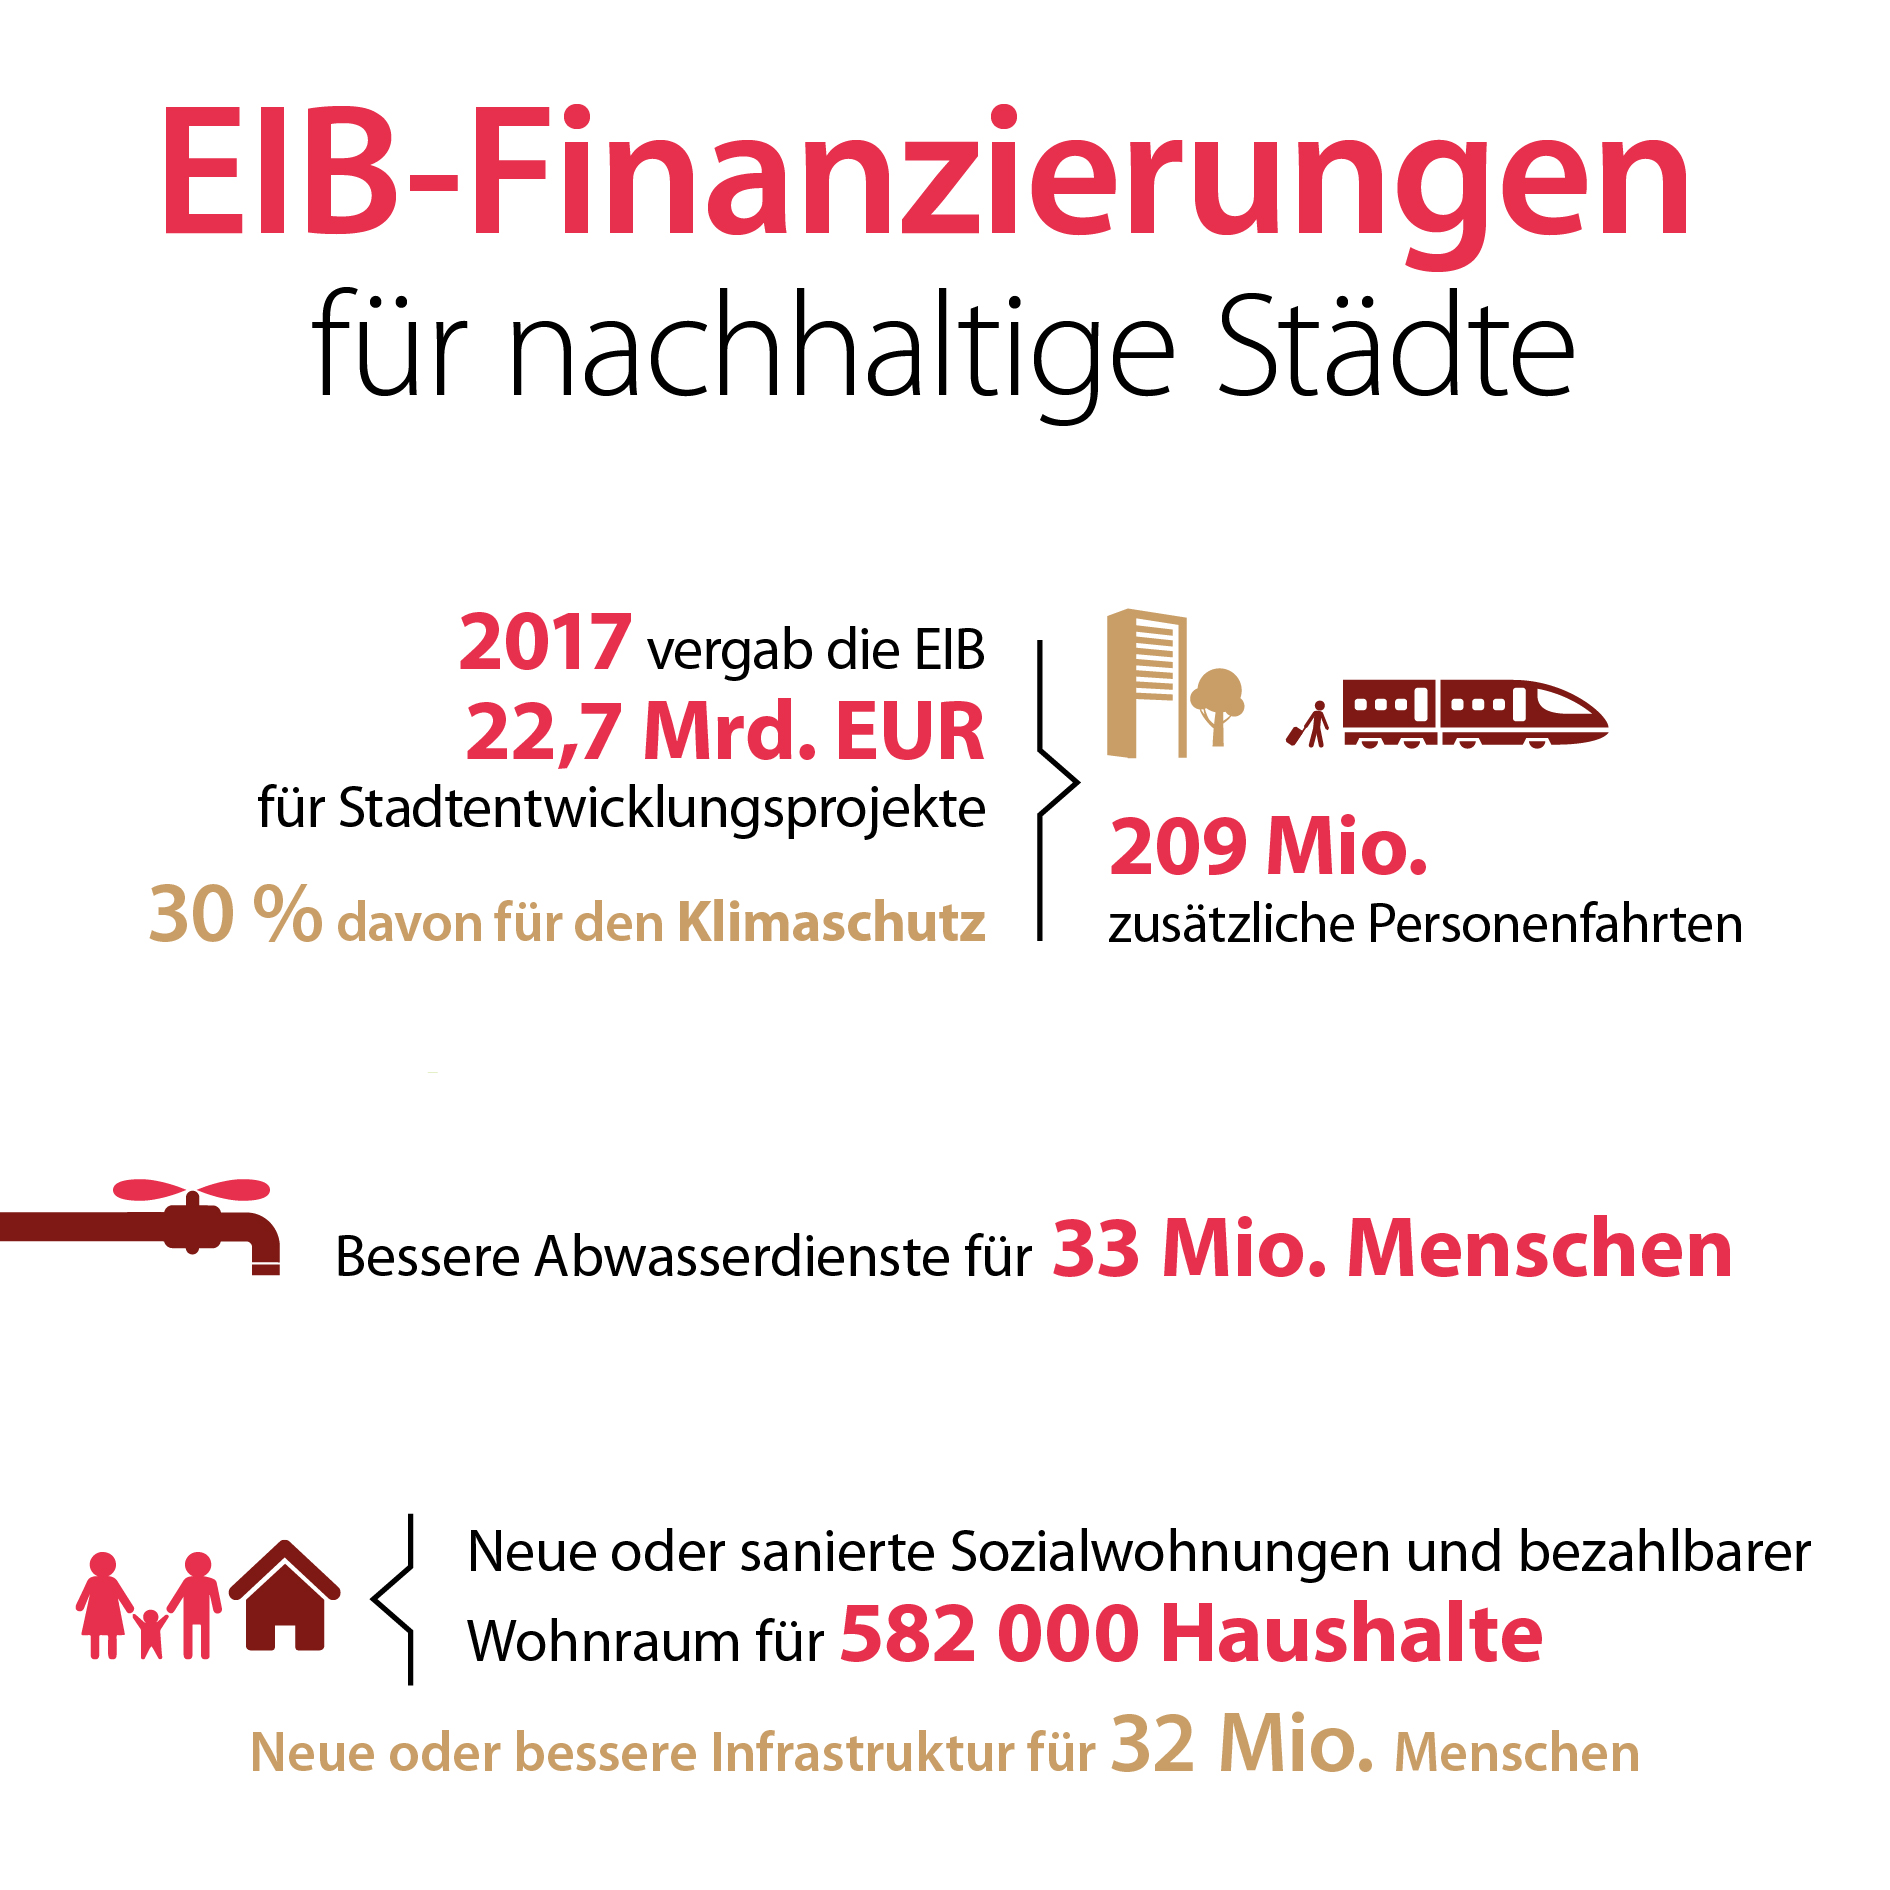 EIB Finanzierungen für nachhaltige Städte